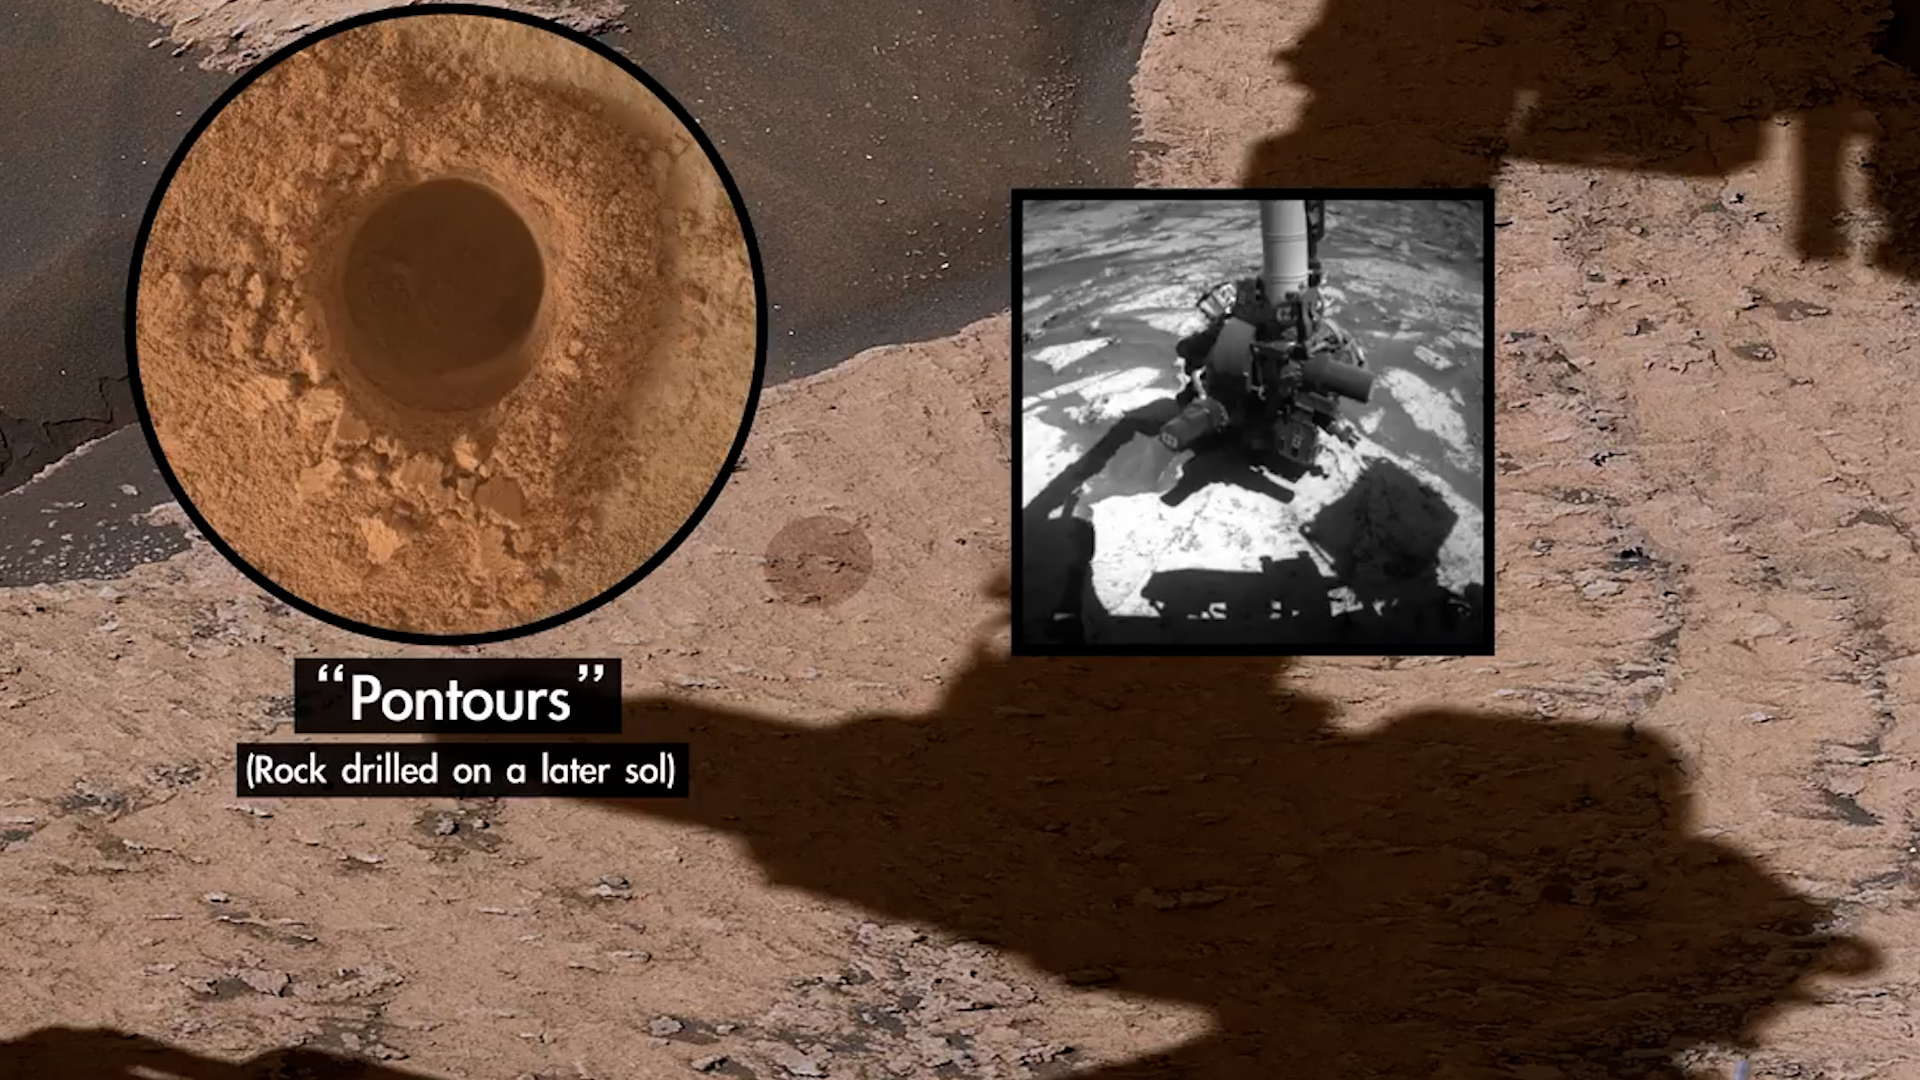 La NASA compartió imágenes de Marte con vista panorámica tomadas por el Curiosity desde una montaña